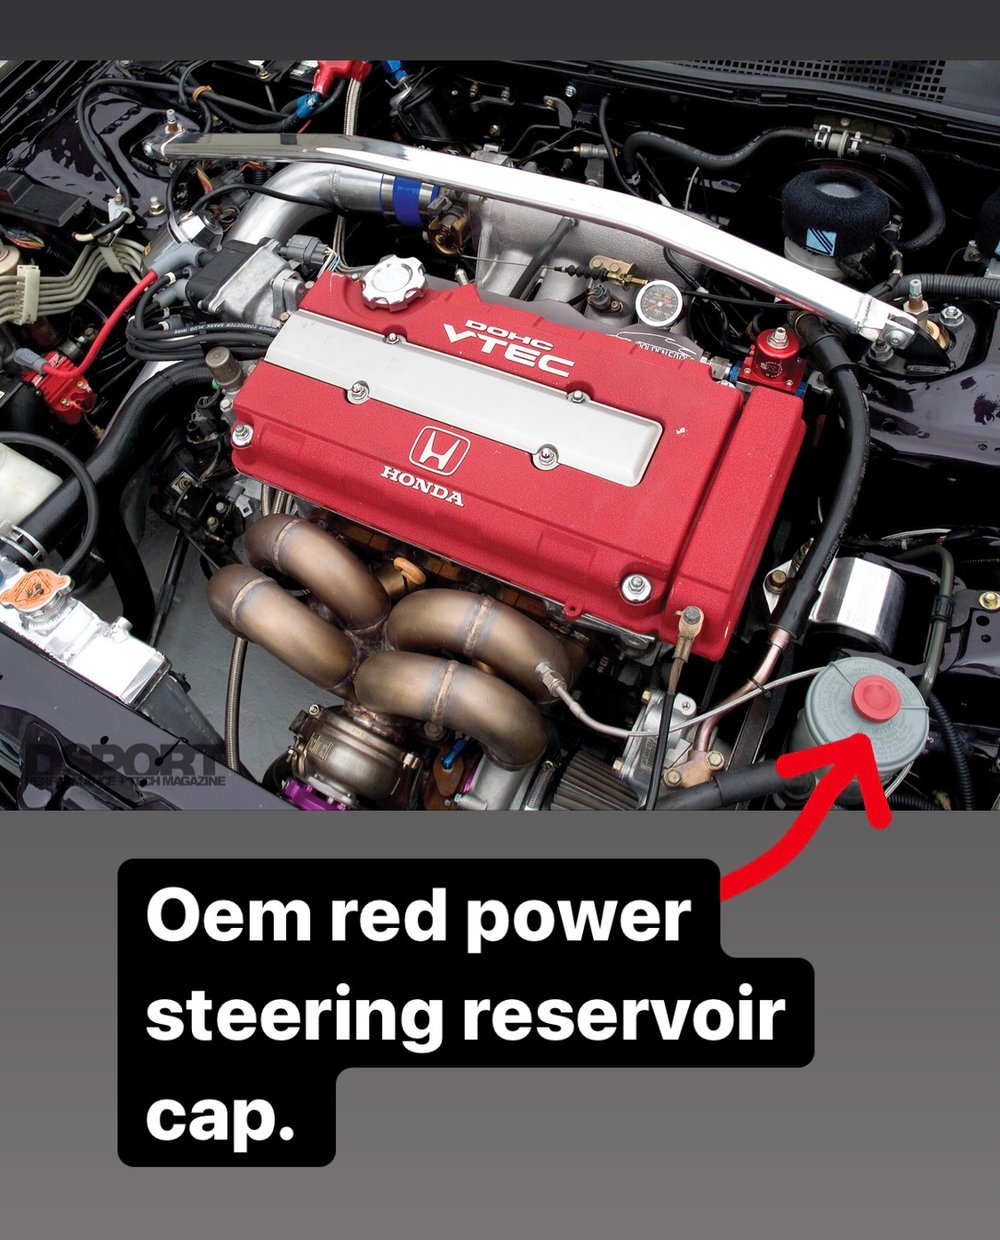 Honda titanium power steering reservoir cap.